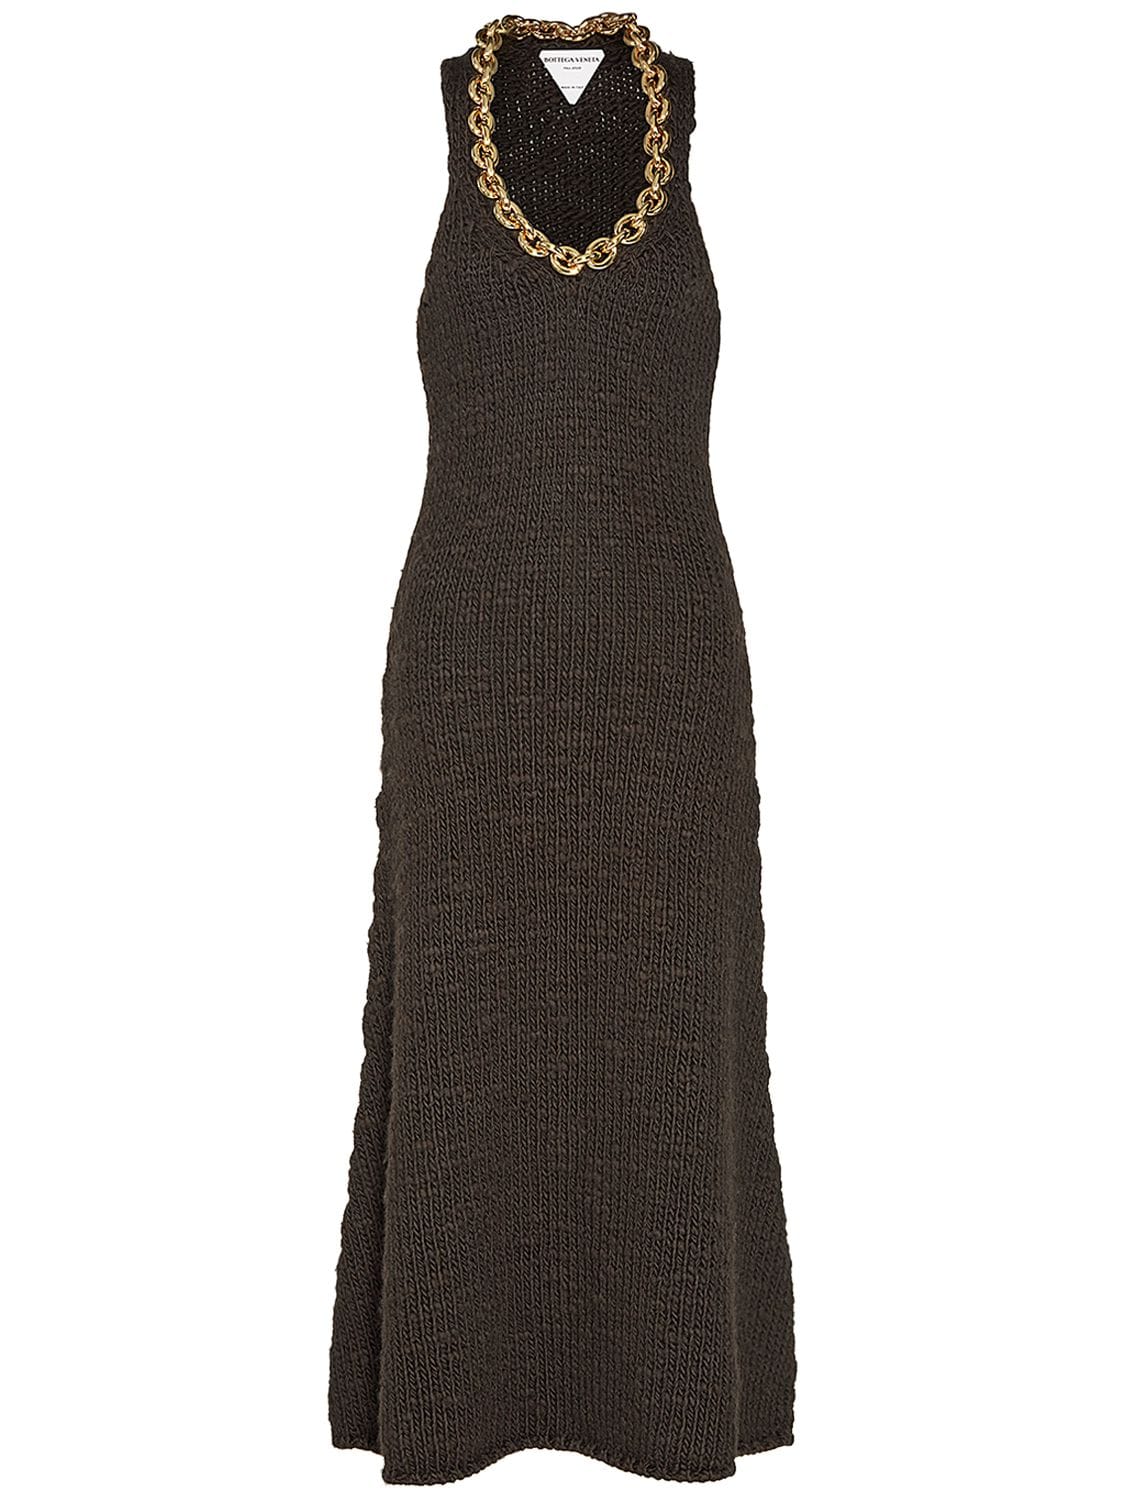 Image of Wool Knit Sleeveless Midi Dress W/chain